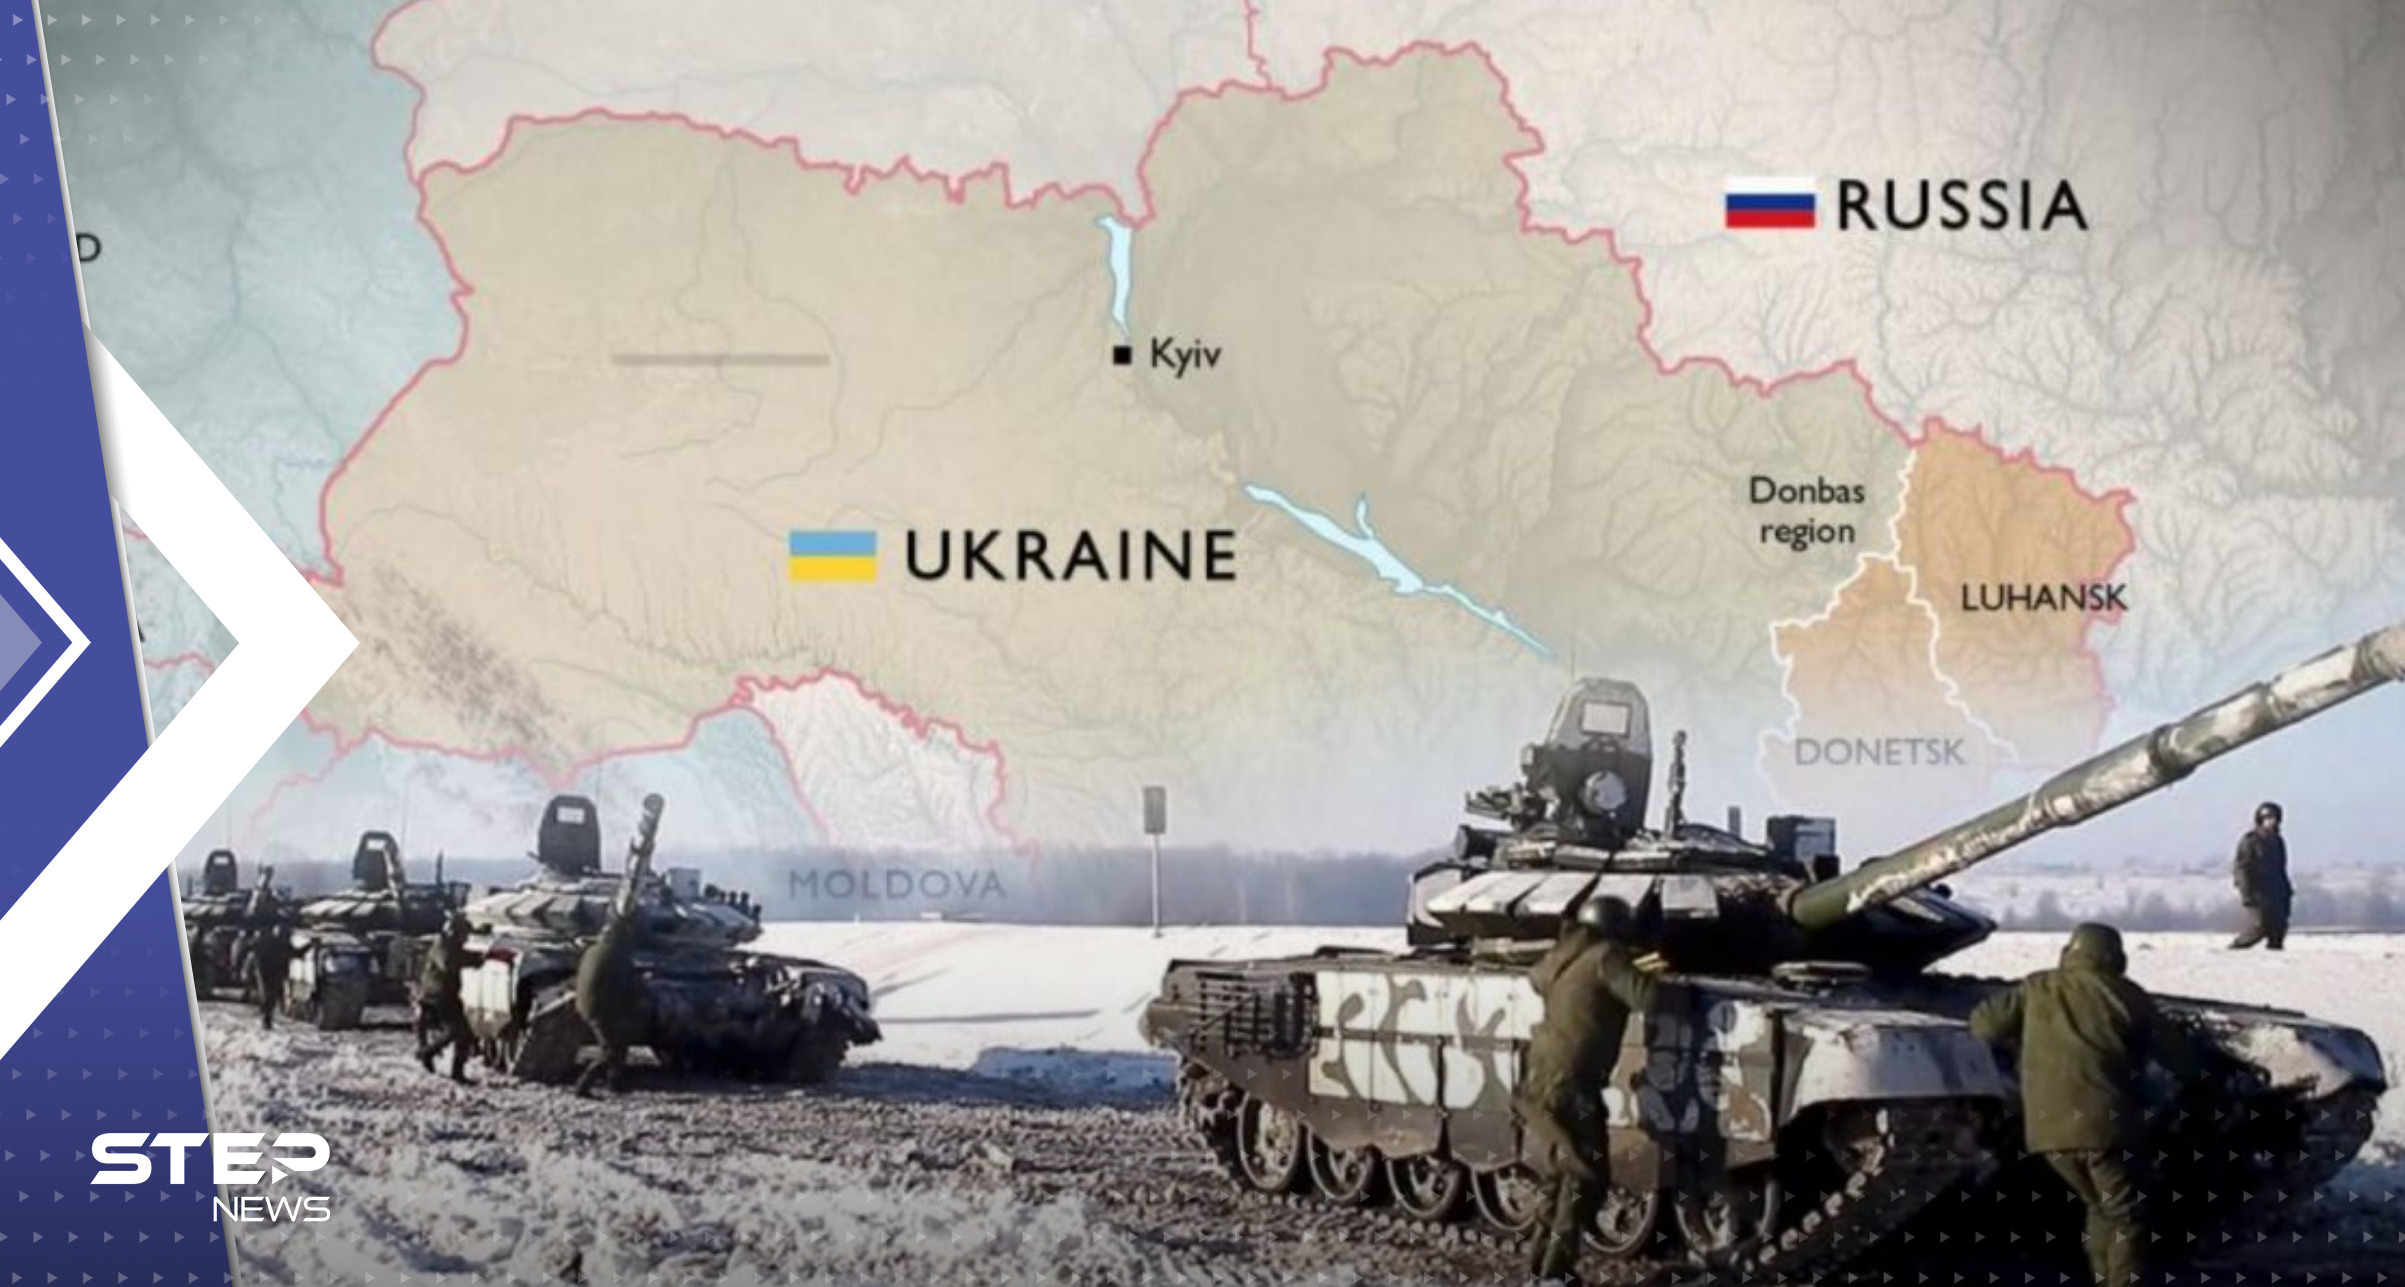 "الأرض مقابل السلام".. طرح جديد لإنهاء حرب أوكرانيا وكييف ترد